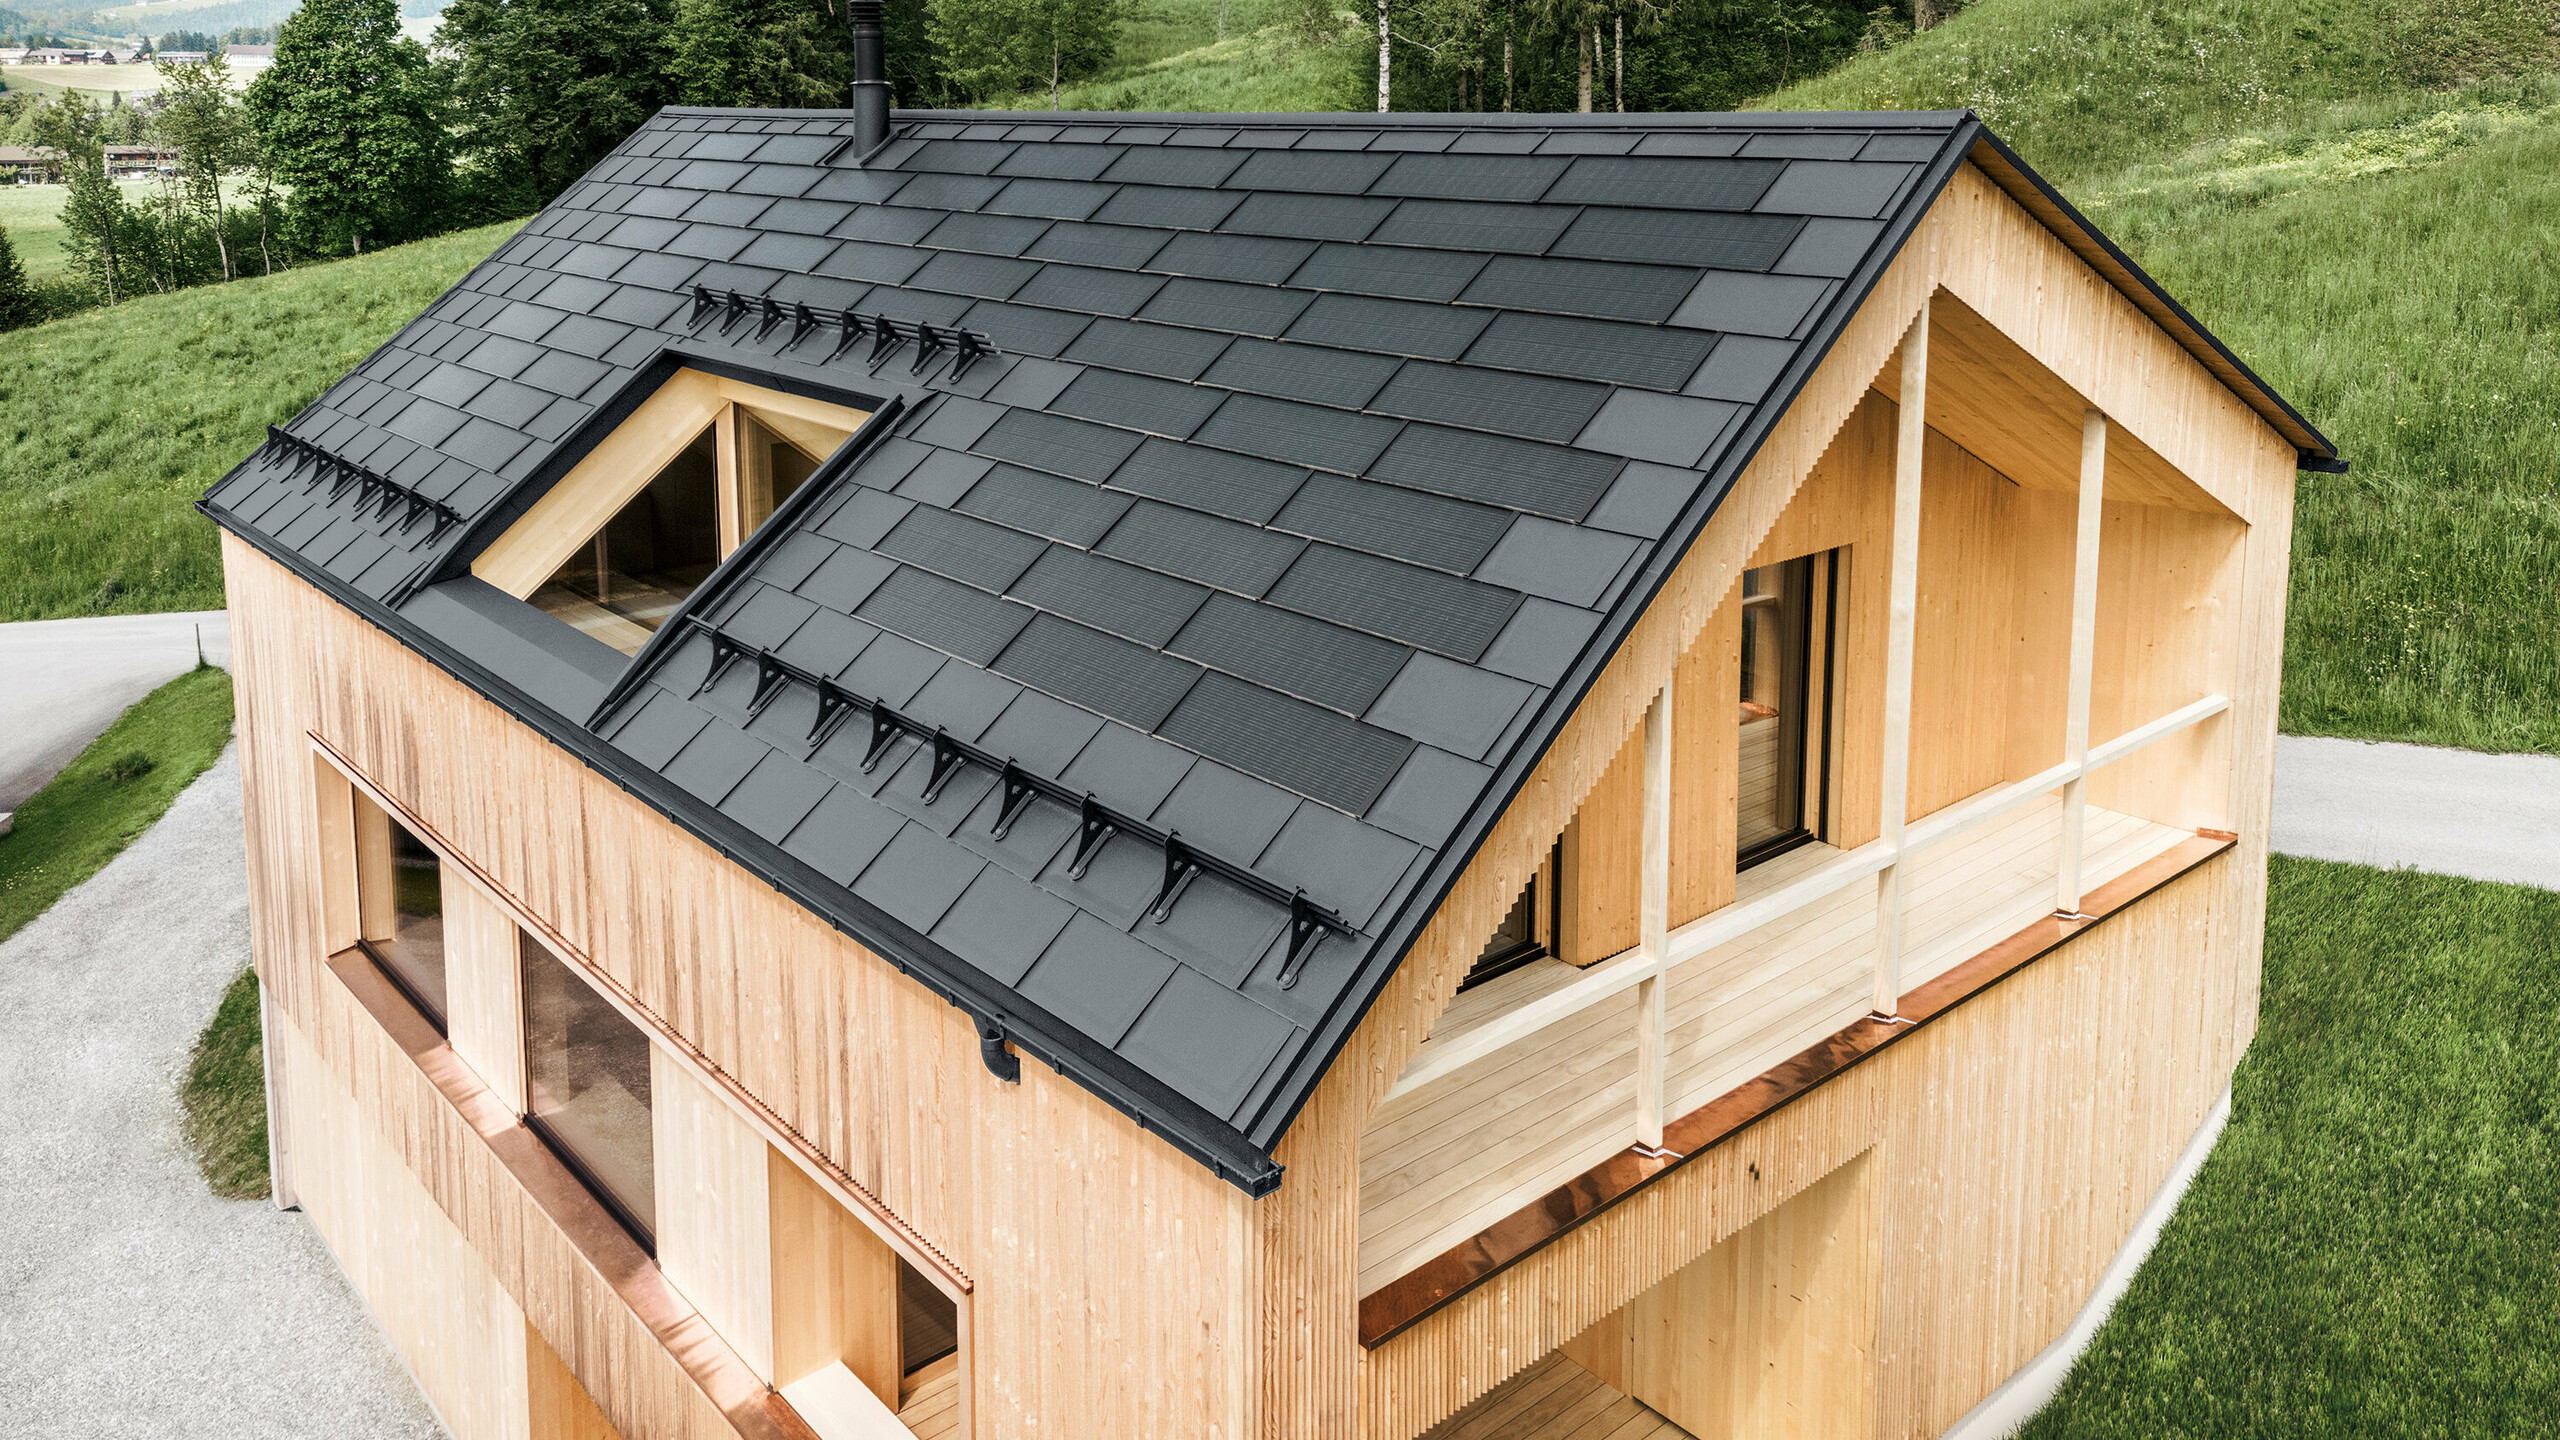 Maison individuelle dans la localité autrichienne d'Egg avec le panneau solaire de toiture PREFA et le panneau de toiture R.16 en gris foncé, combinés à une façade en bois